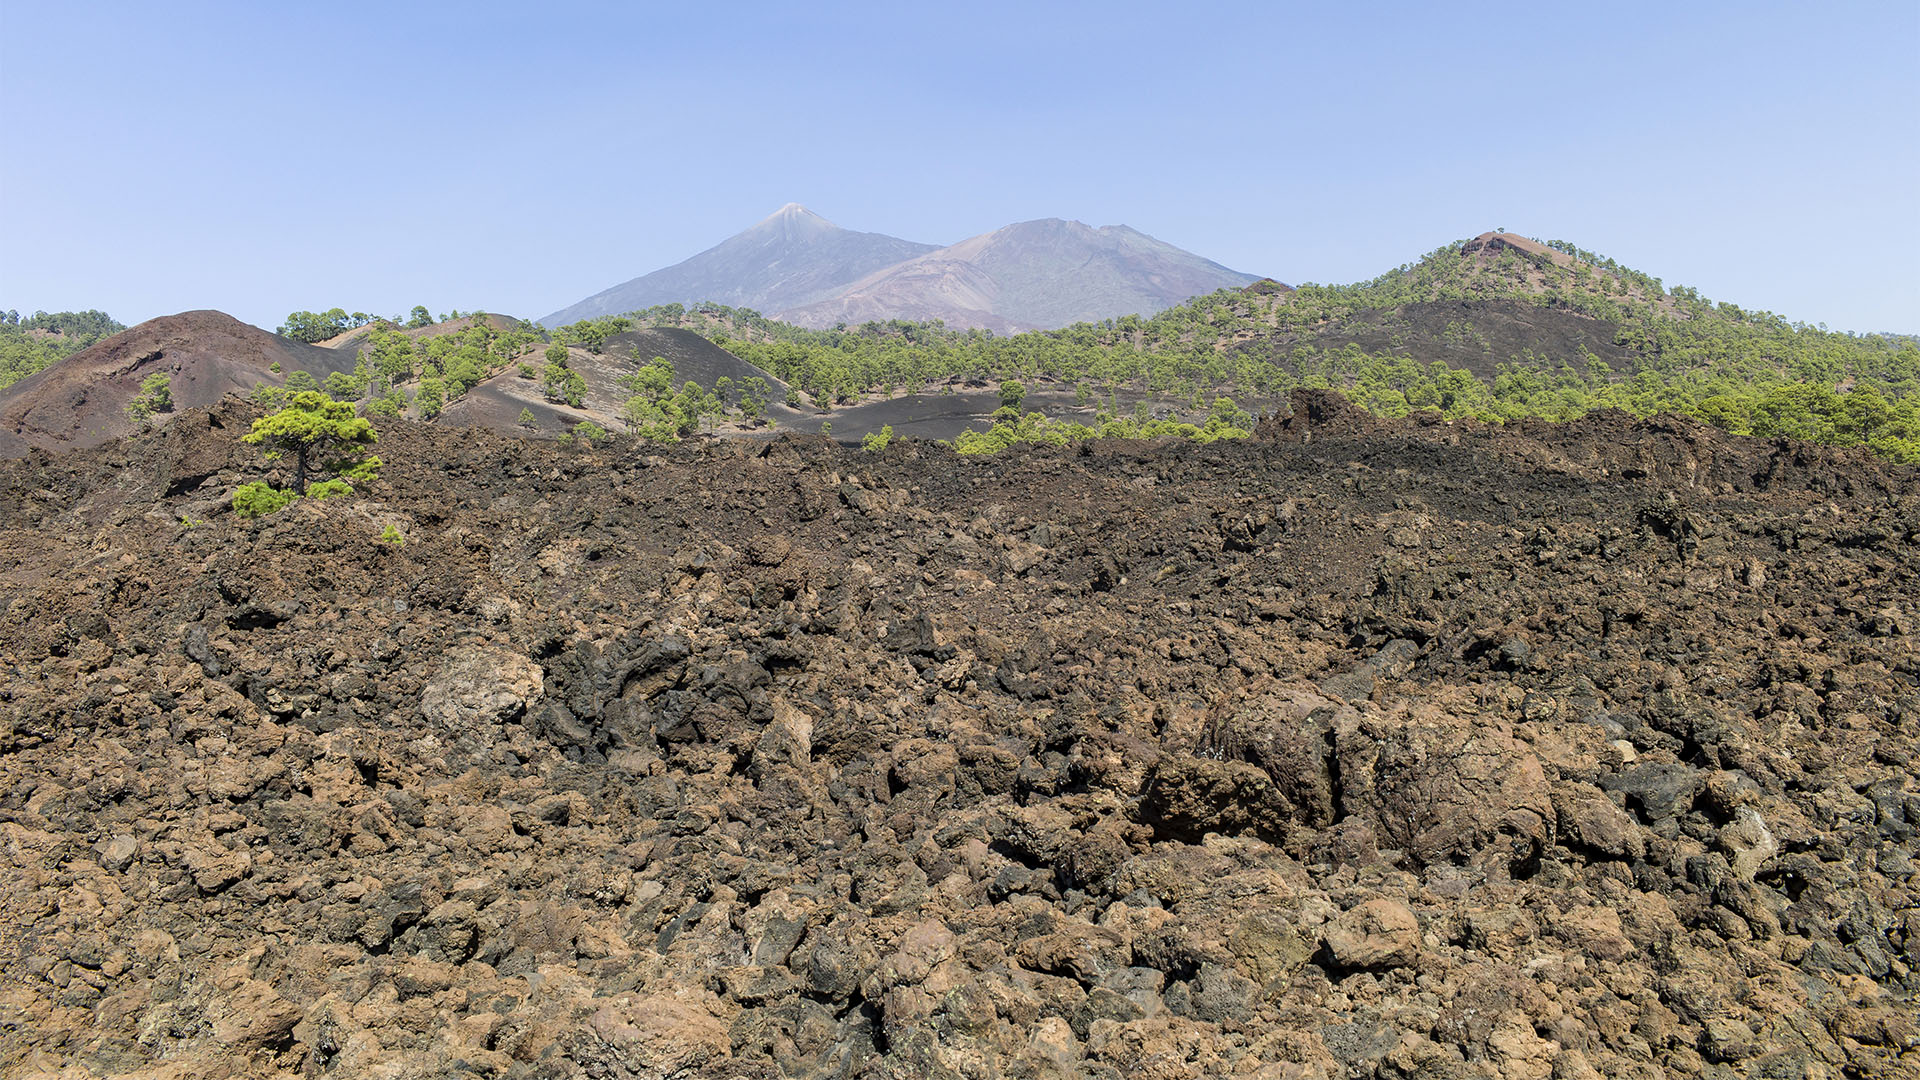 Der letzte Vulkanausbruch im Teide Nationalpark Teneriffa war 1909. Der Chinyero brach aus. Auf der Lava beginnt ganz langsam neues Leben zu entstehen.